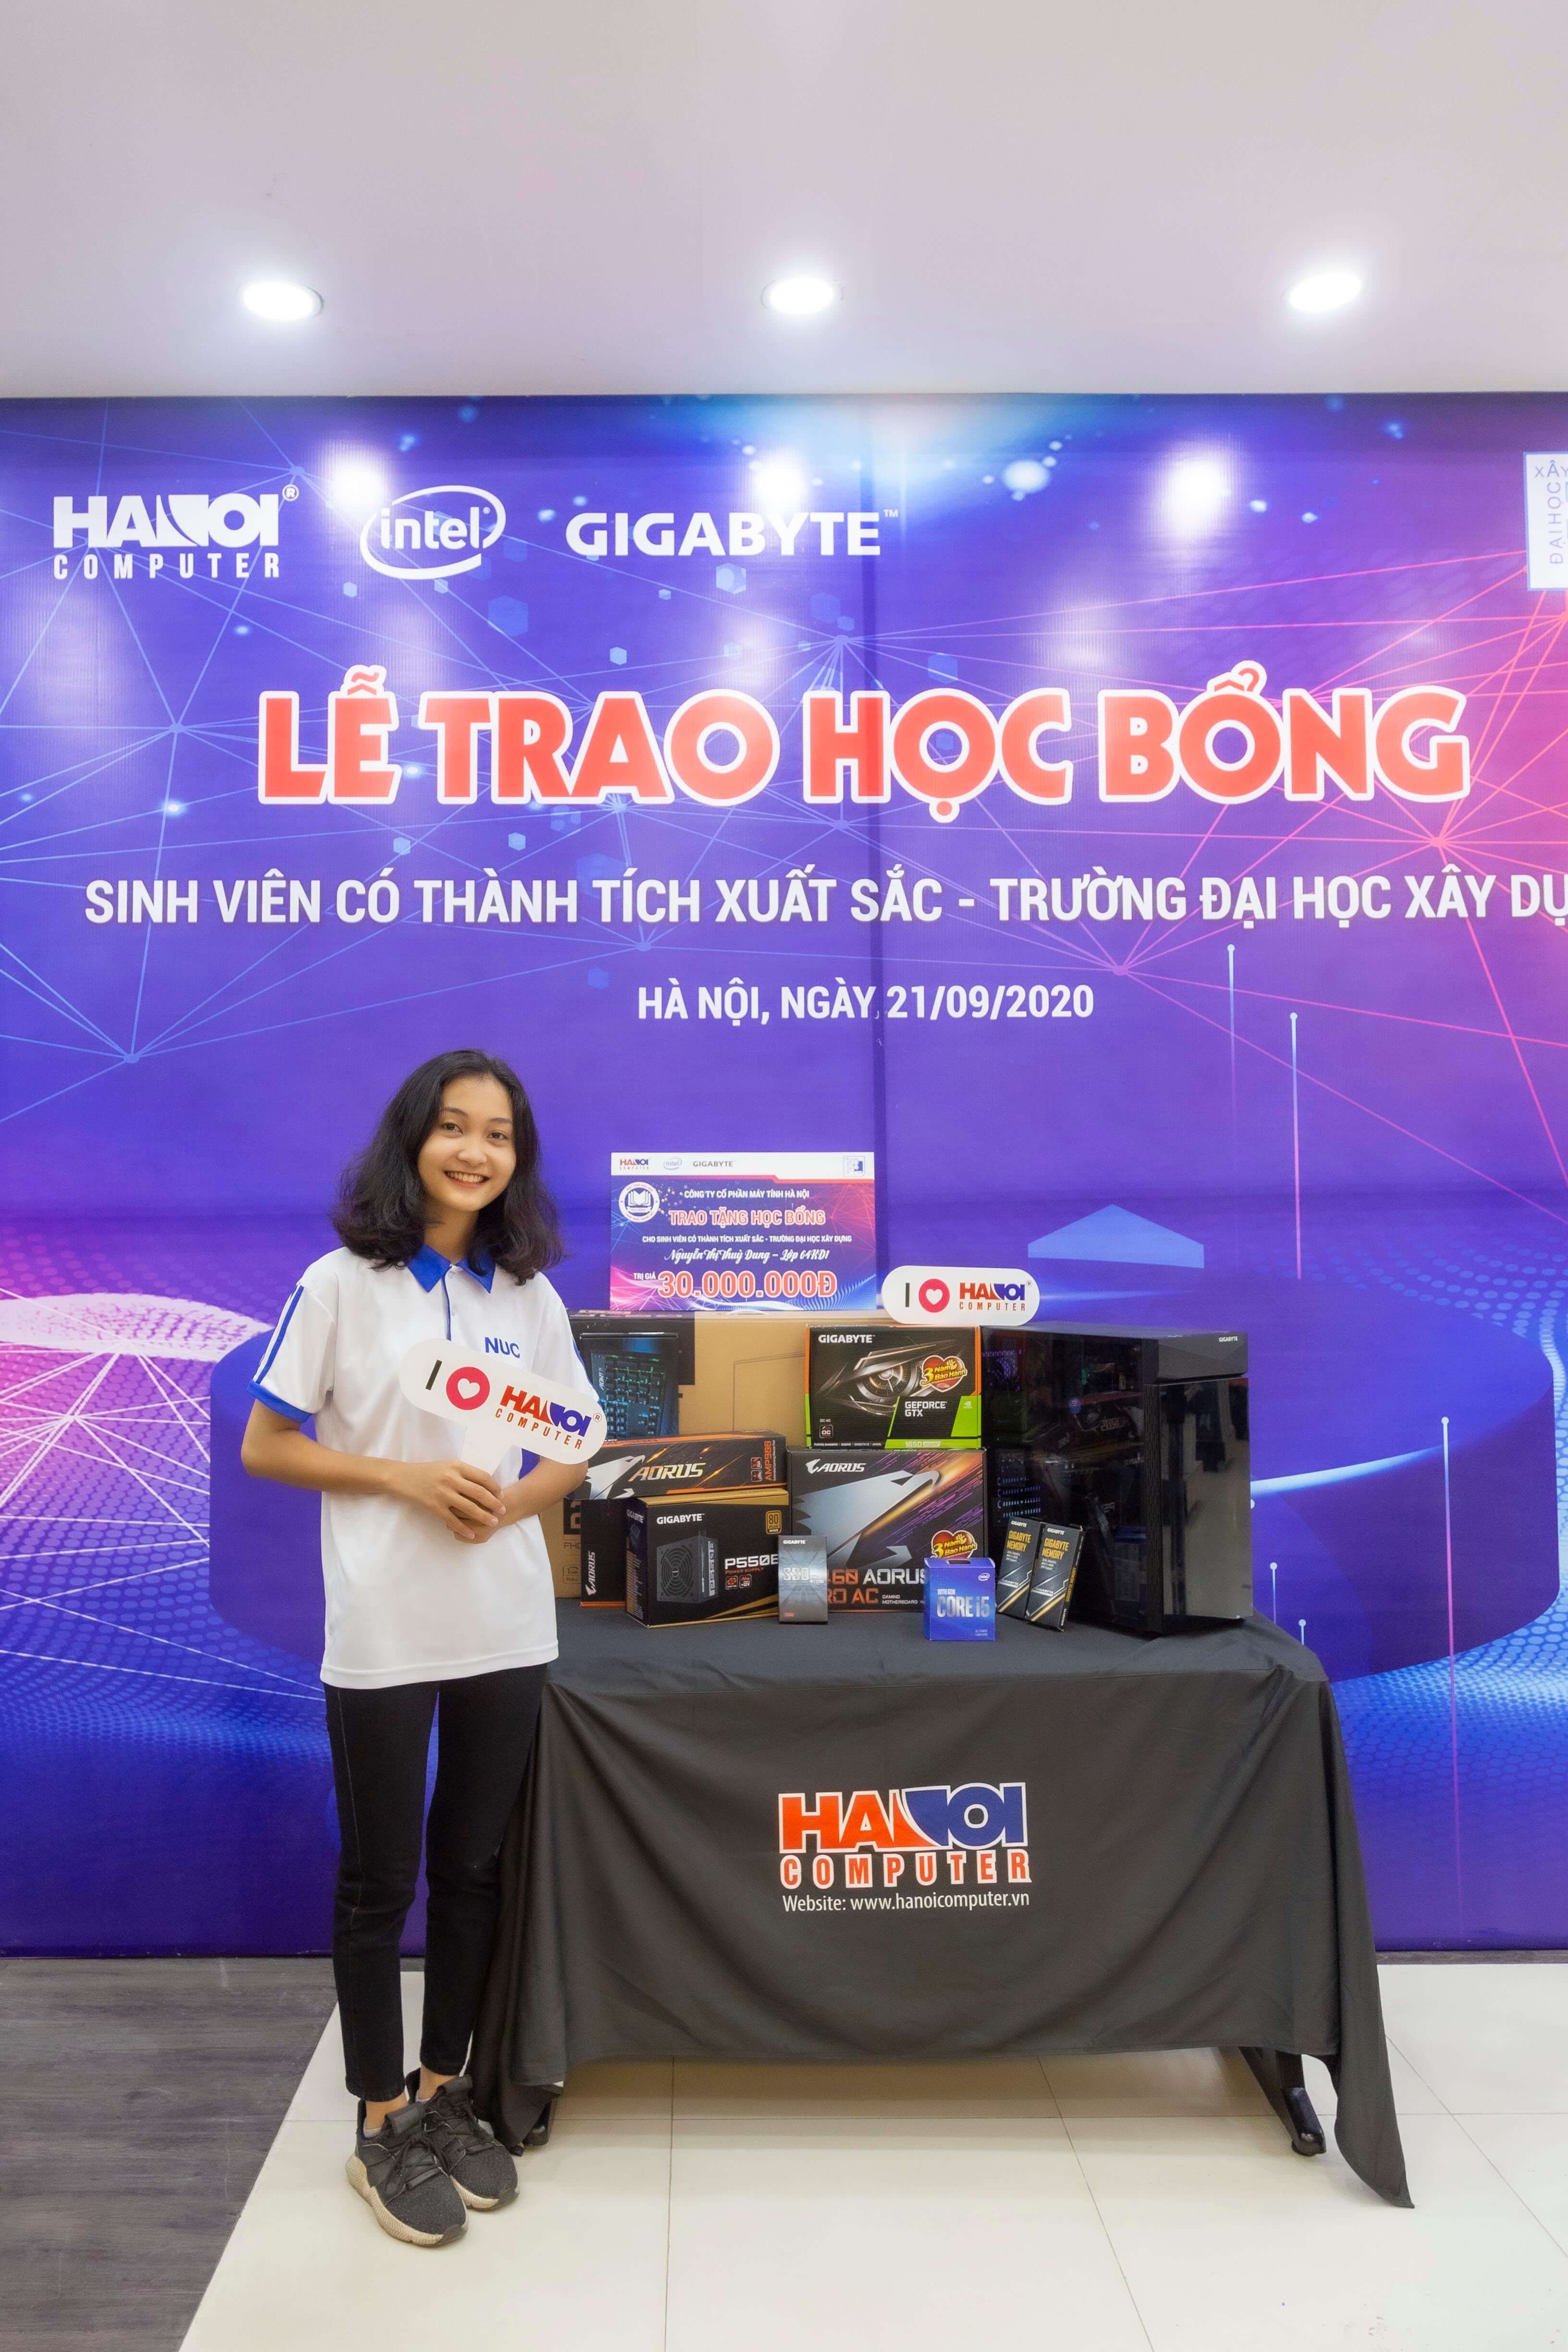 hanoicomputer-cung-voi-hang-intel-va-gigabyte-tiep-suc-chinh-phuc-uoc-mo